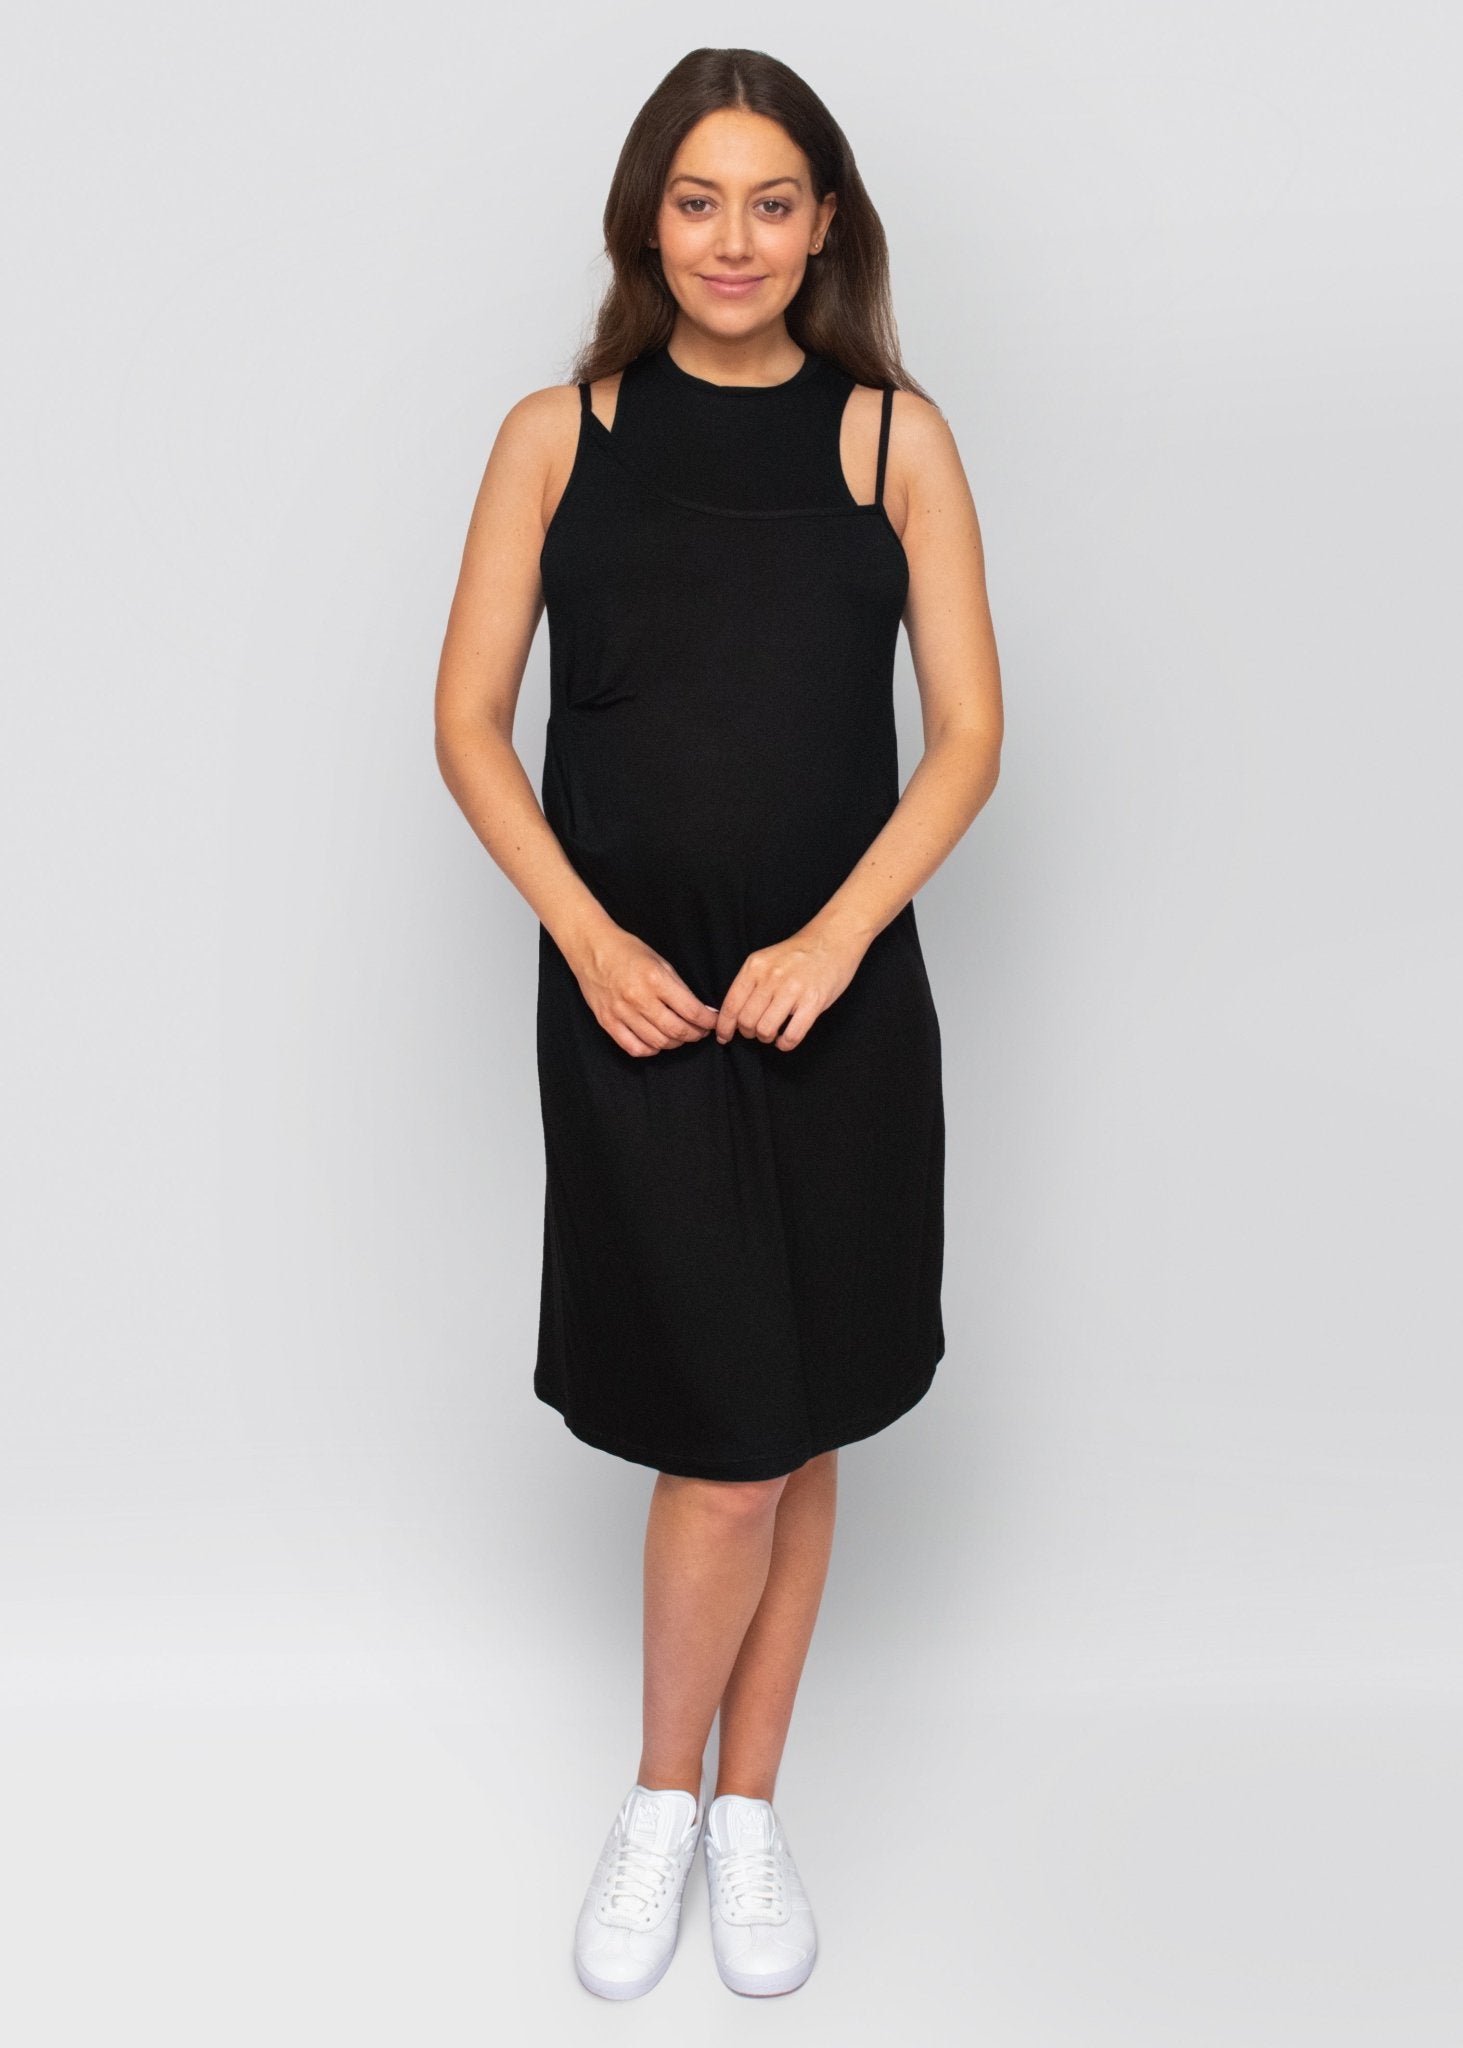 dress - black-Úton Maternity-stride